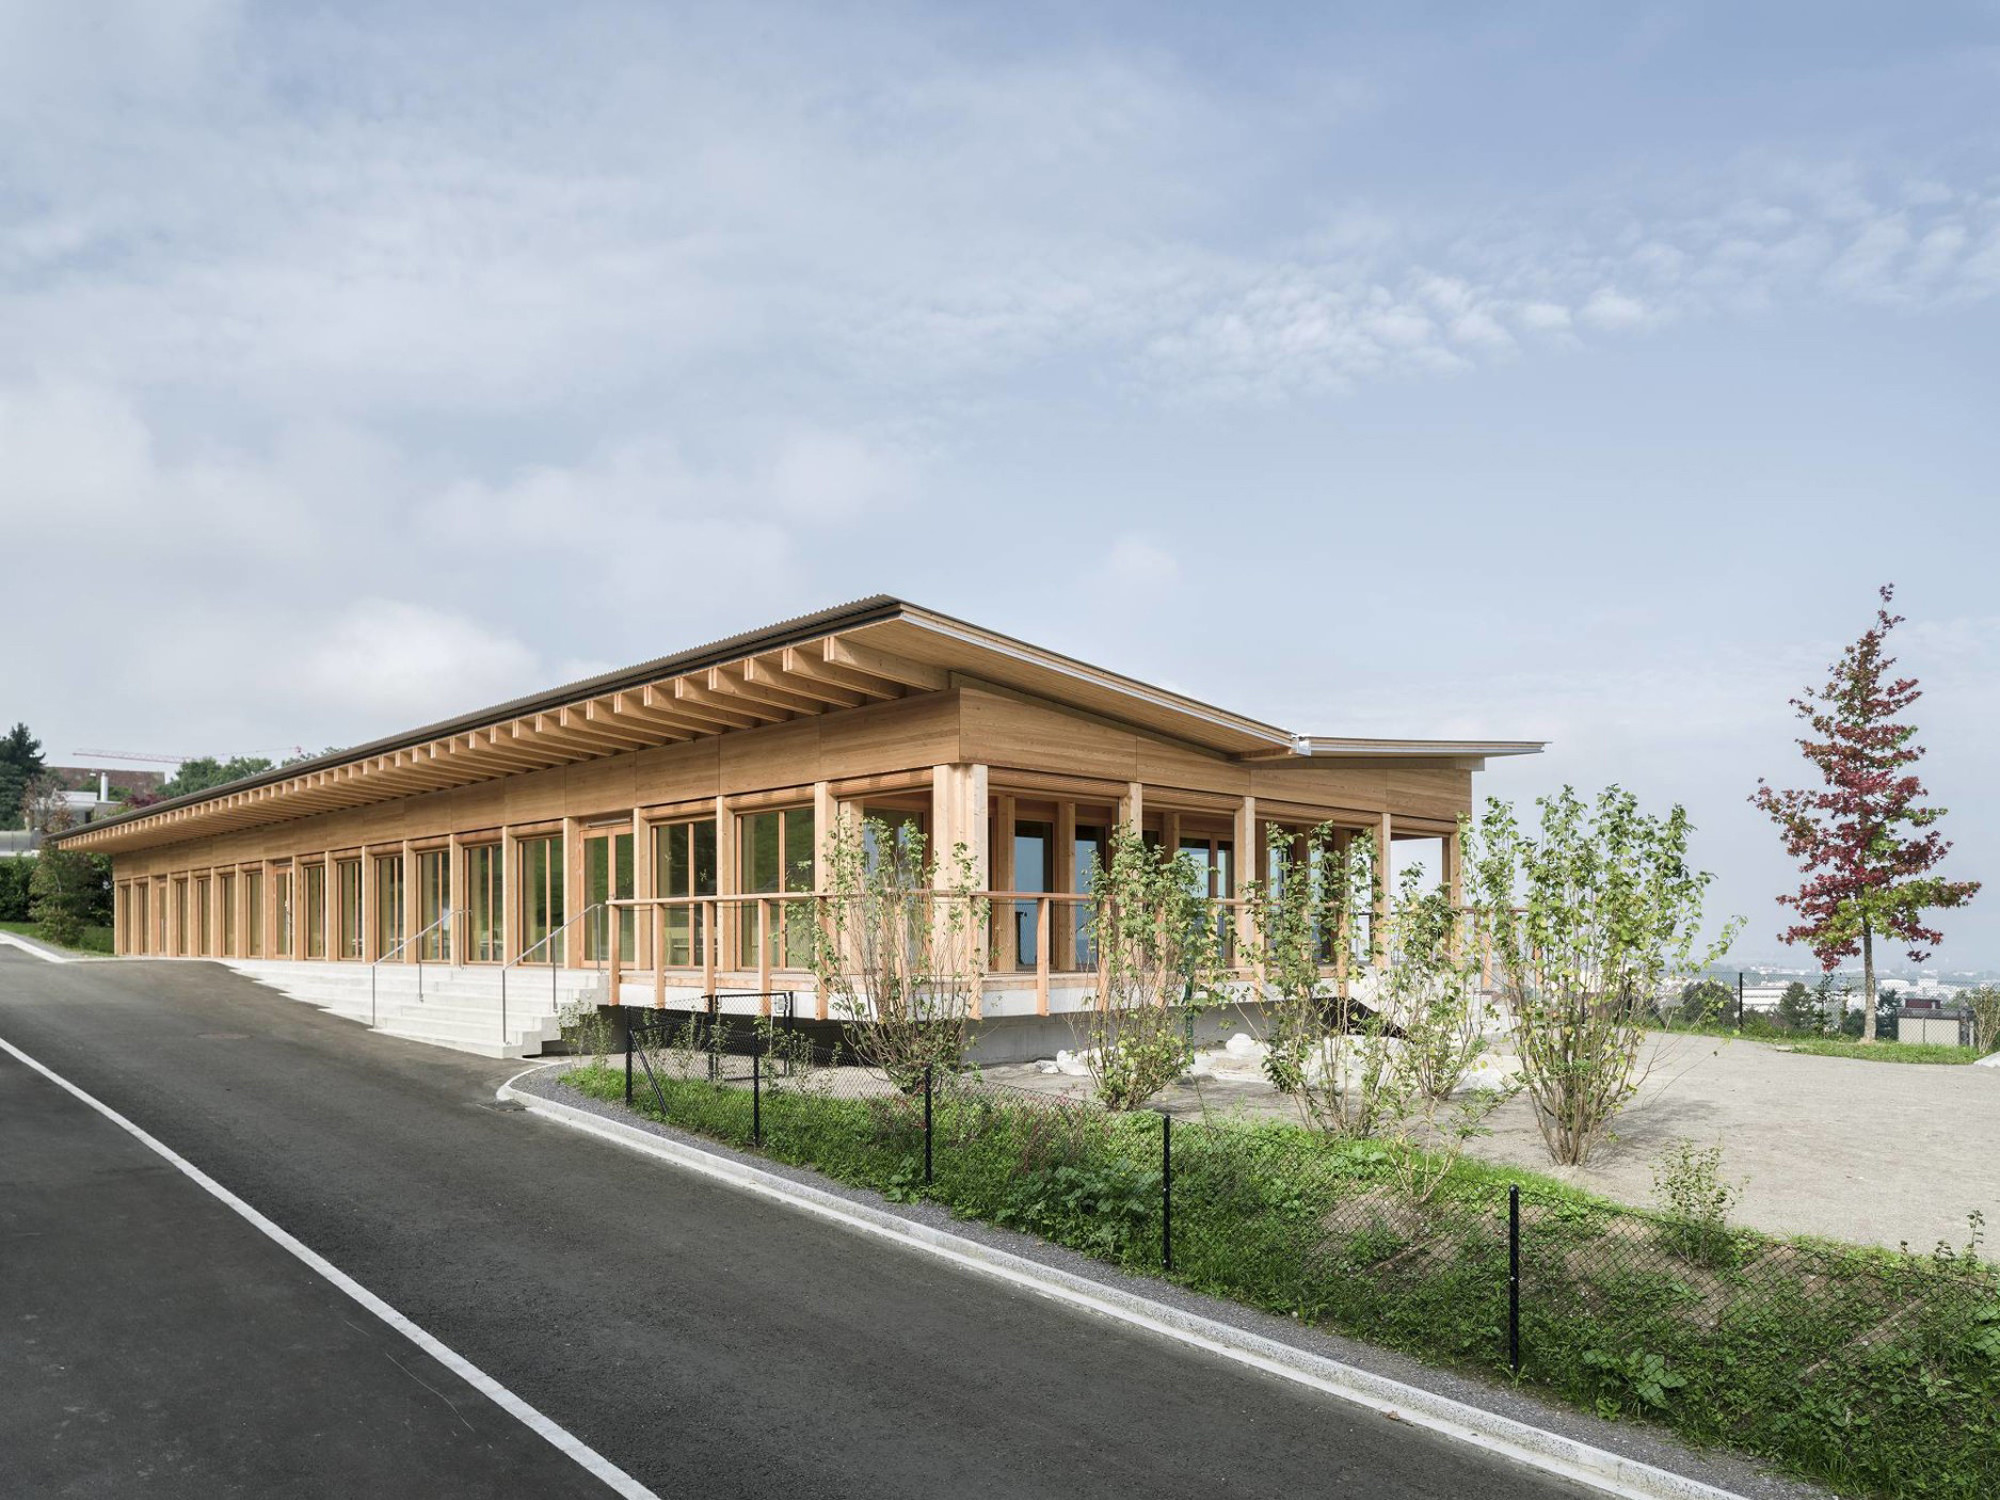 Der Kindergarten nach Plänen der Baseler Architekten Jaeger Küchlin ist eine elegante Holzkonstruktion mit Schmetterlingsdach.